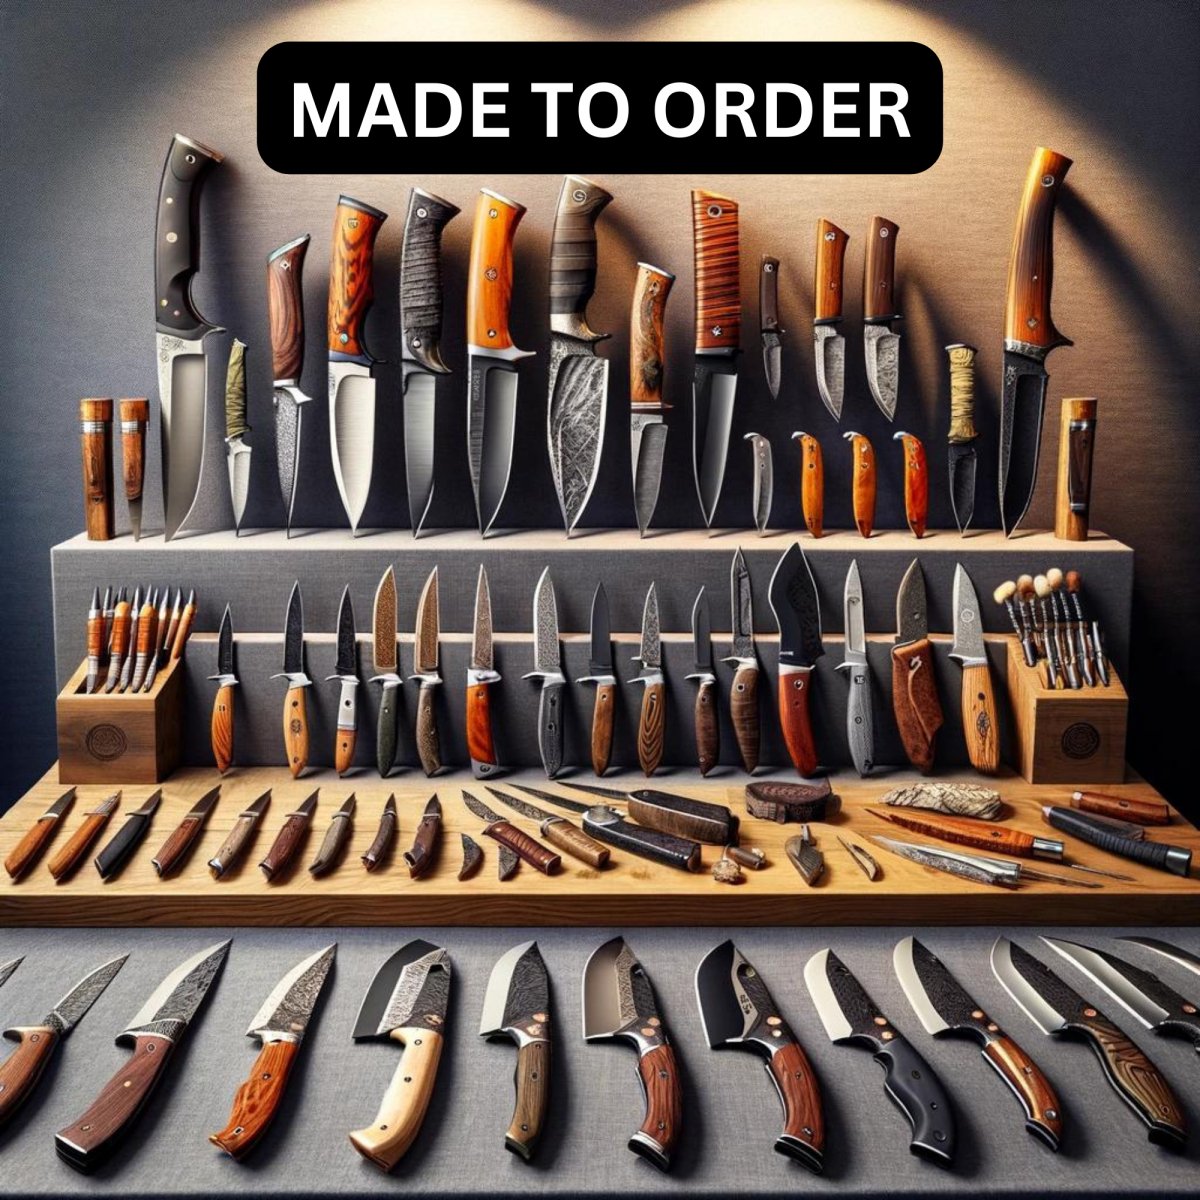 Made to Order - Shokunin Knives